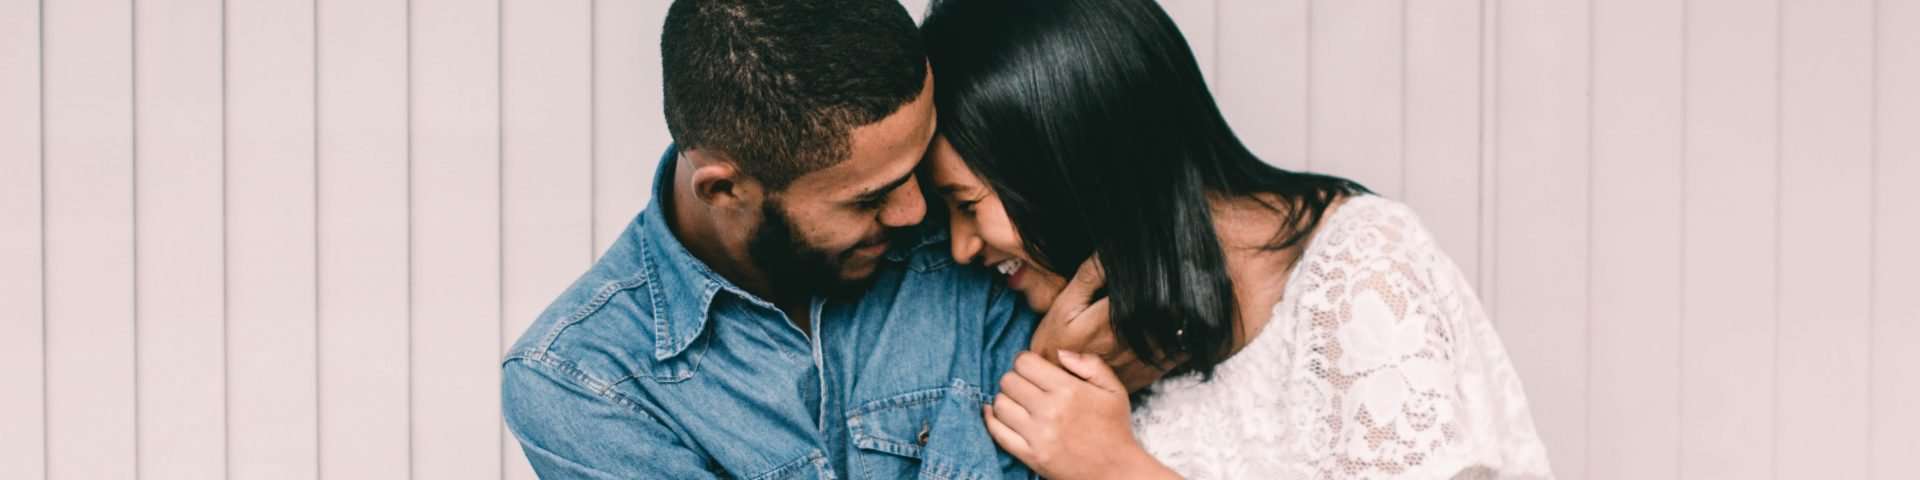 Liebe ist NICHT genug und 19 andere Dinge, die man über Beziehungen lernt, wenn man endlich in einer guten ist